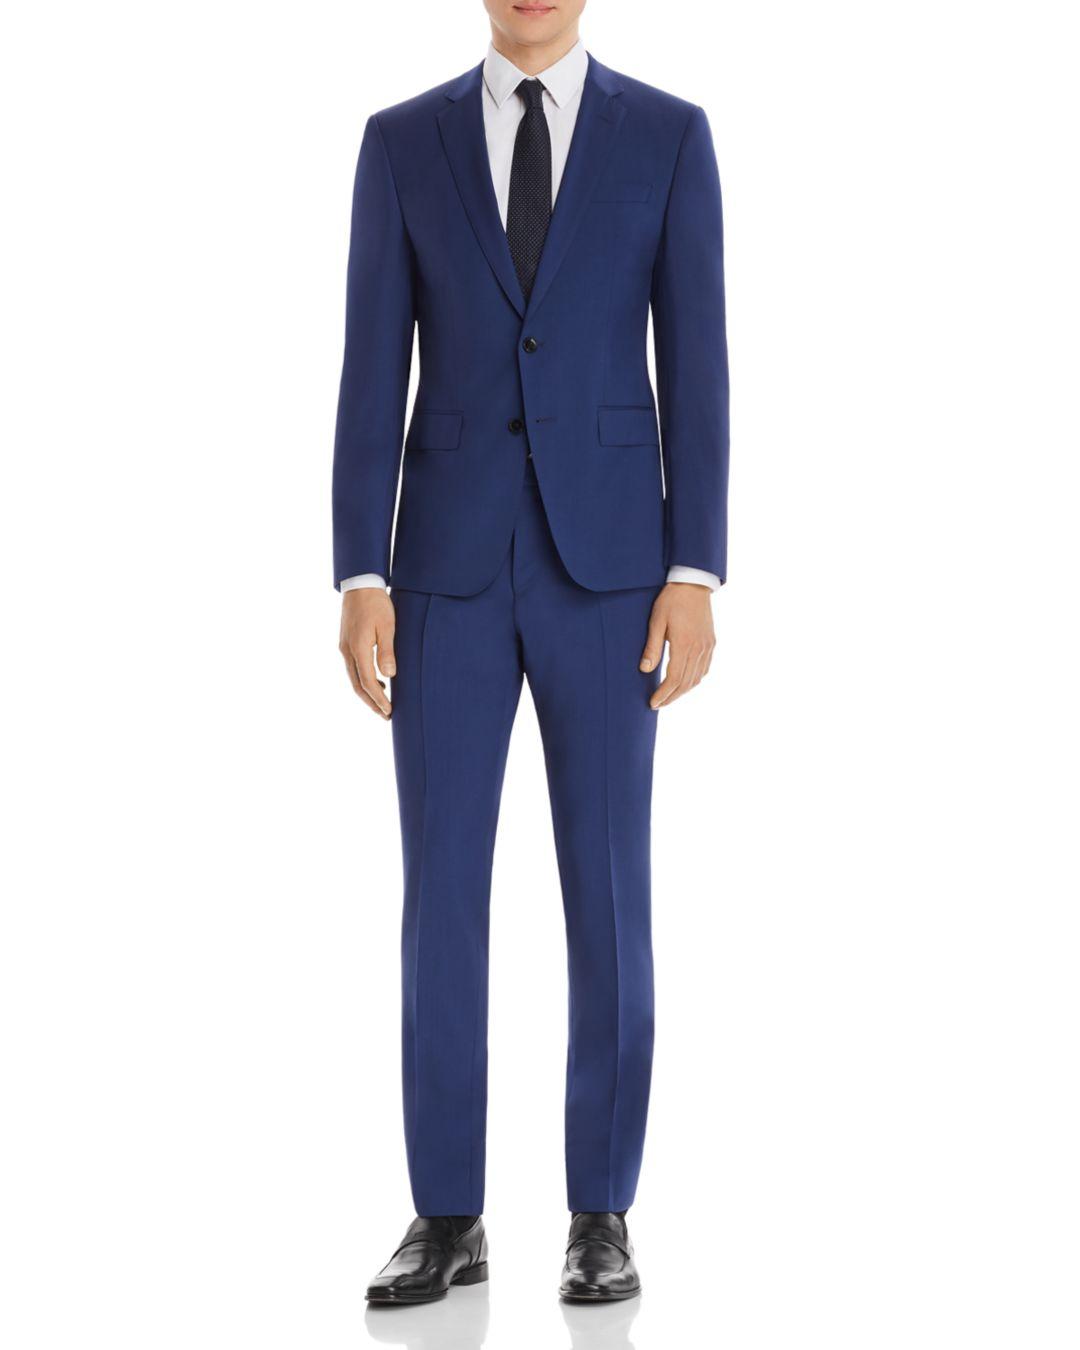 BOSS by Hugo Boss Huge/genius Slim Fit Suit in Navy (Blue) for Men - Lyst